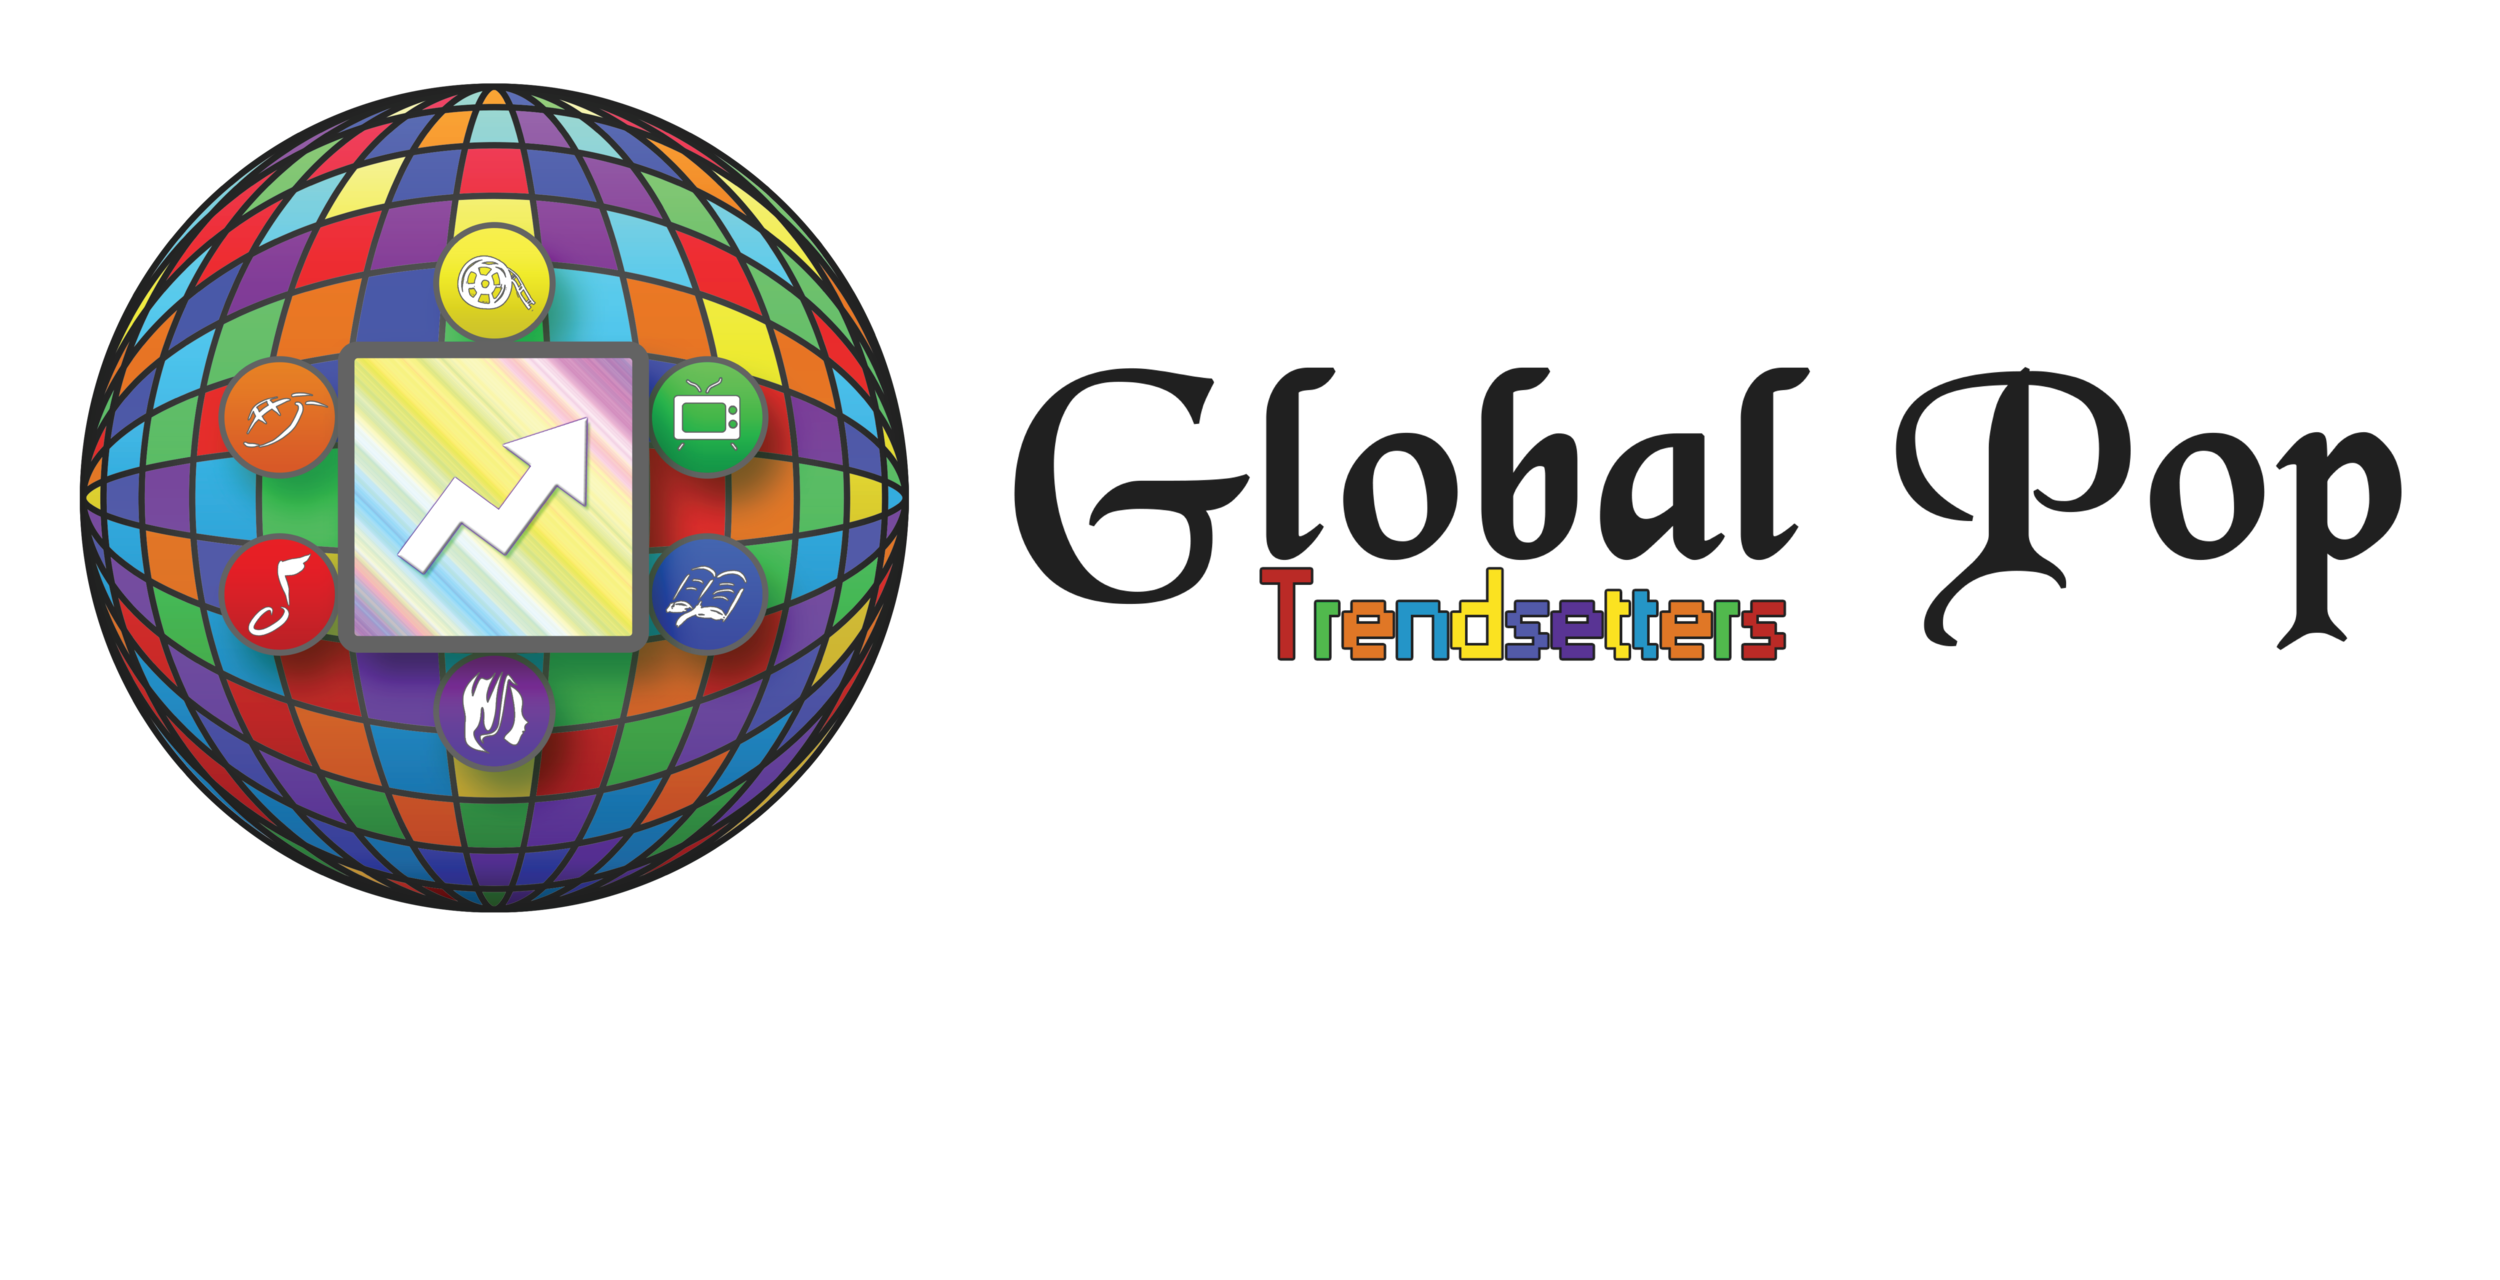 Global Pop Trendsetters